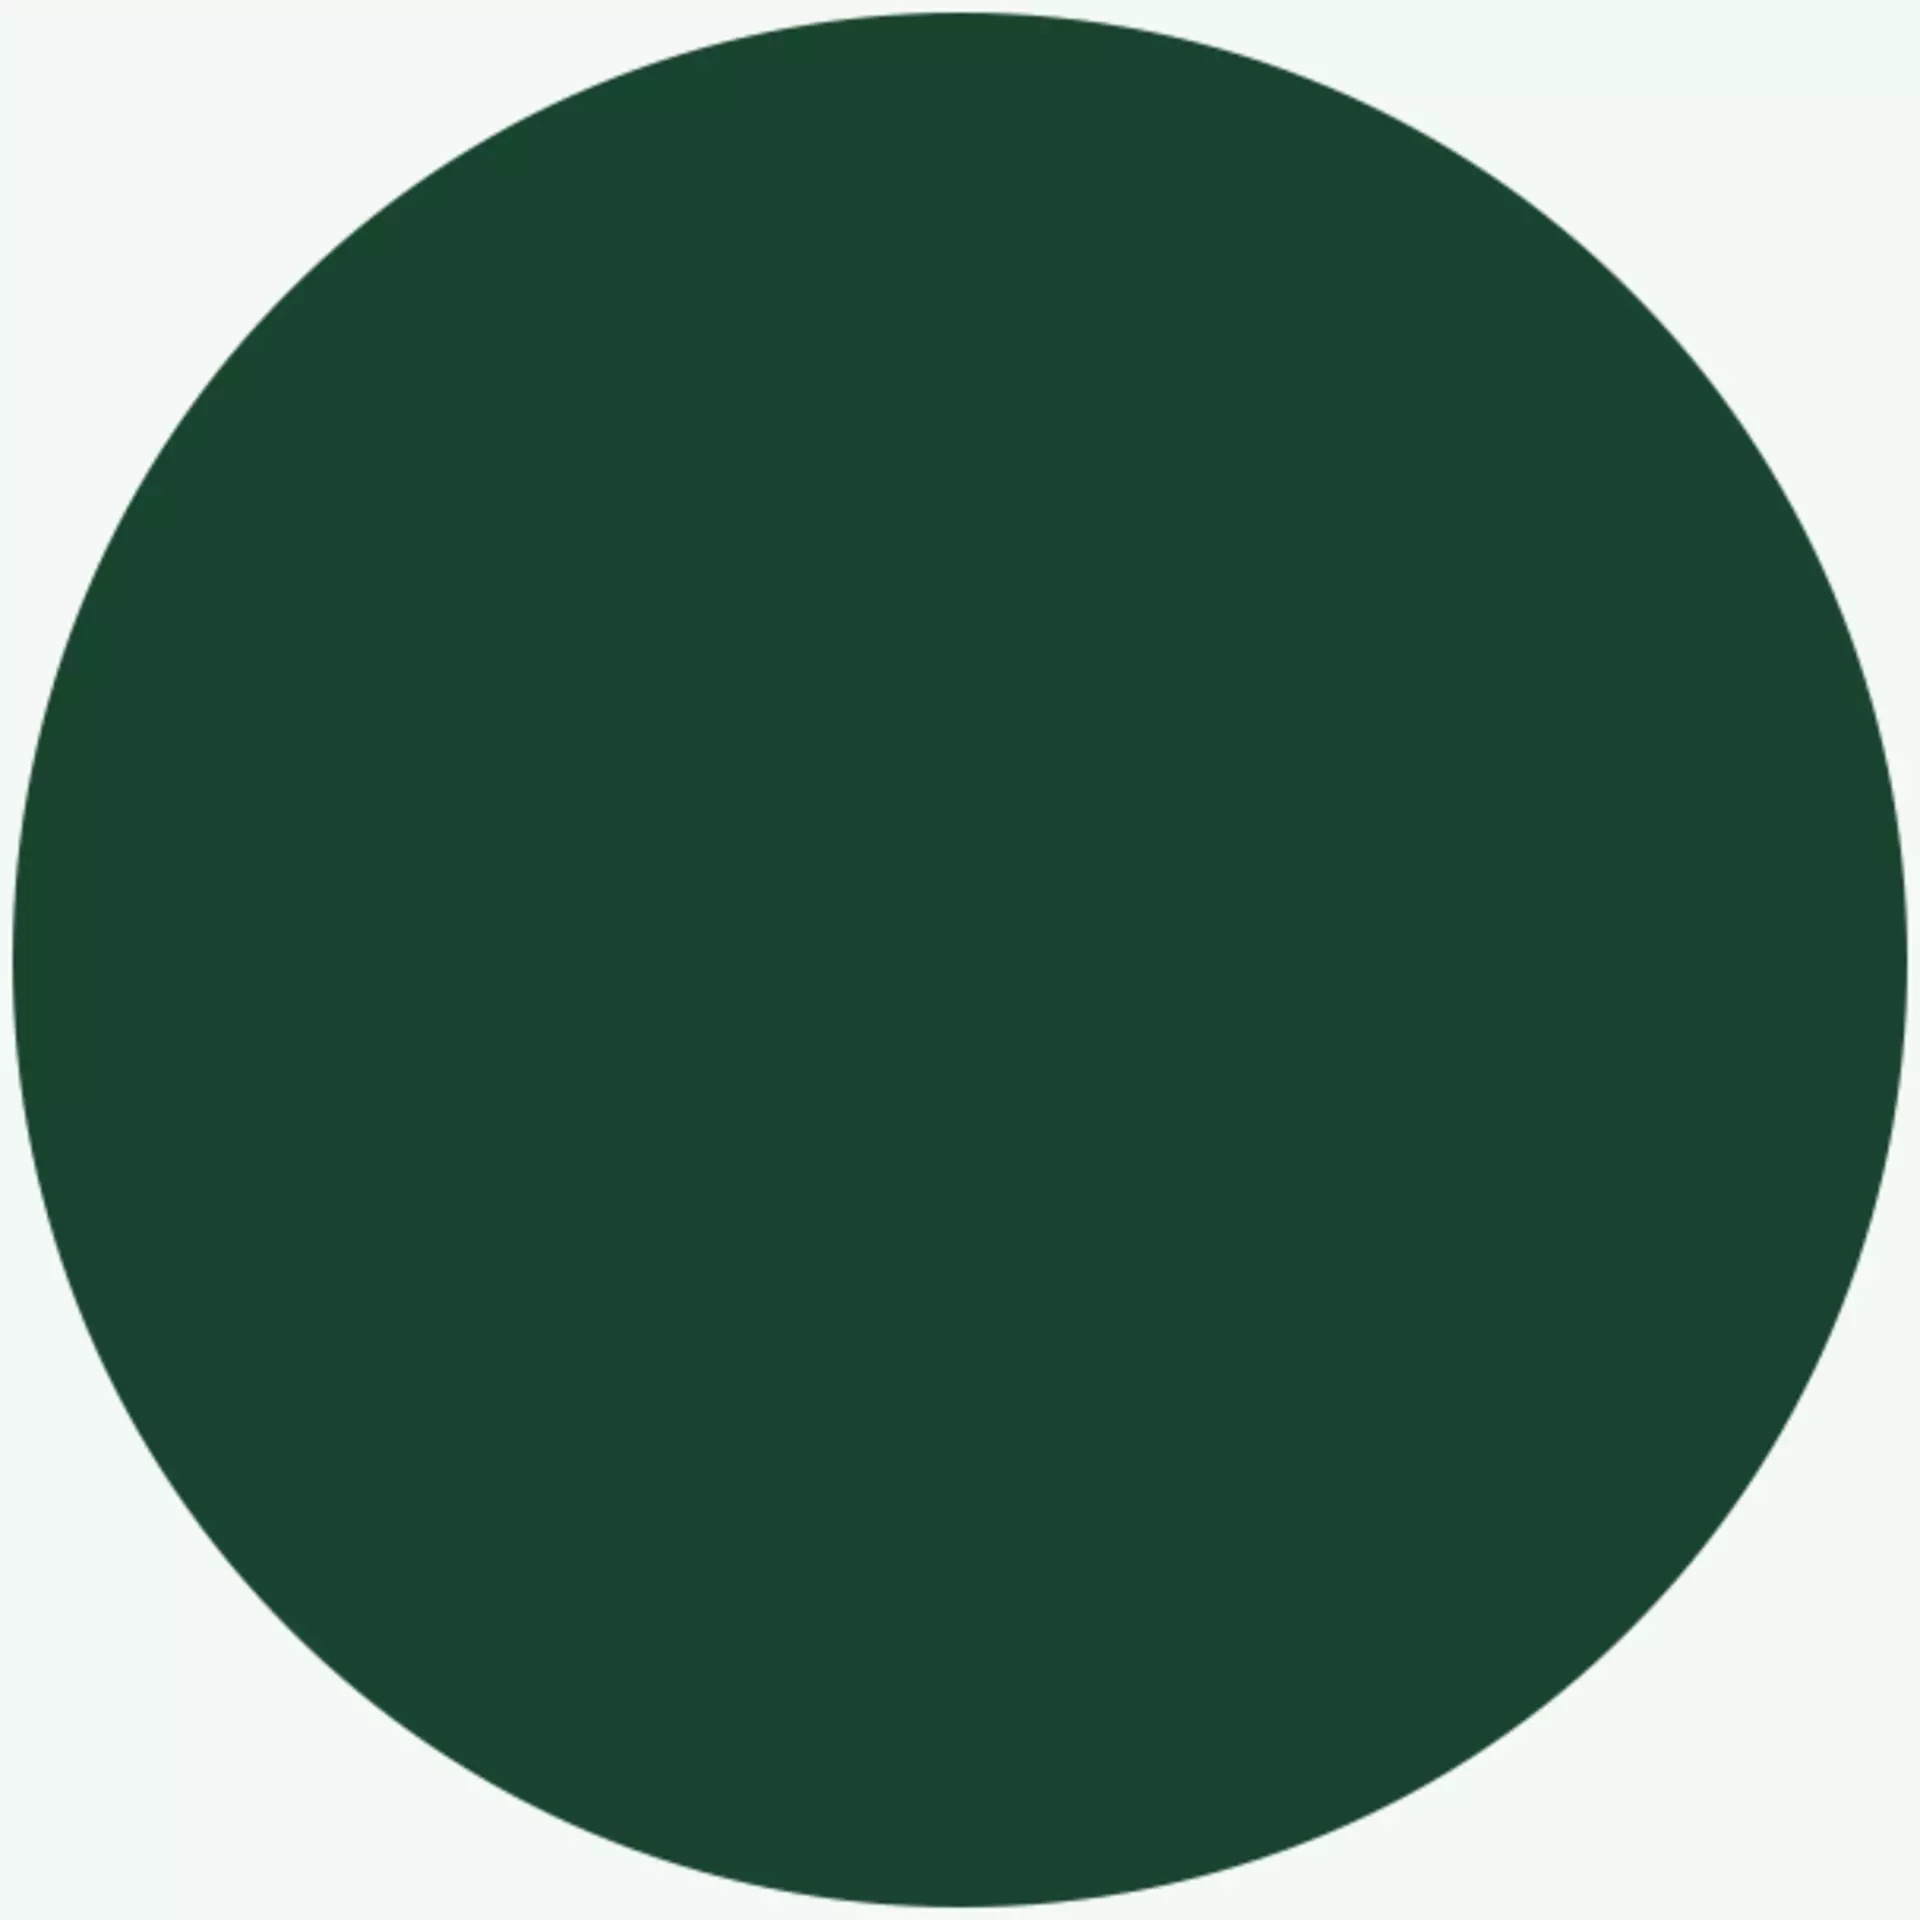 Waldgrün - der entspannte, dunkle Farbton aus der Royal Green Farbpalette